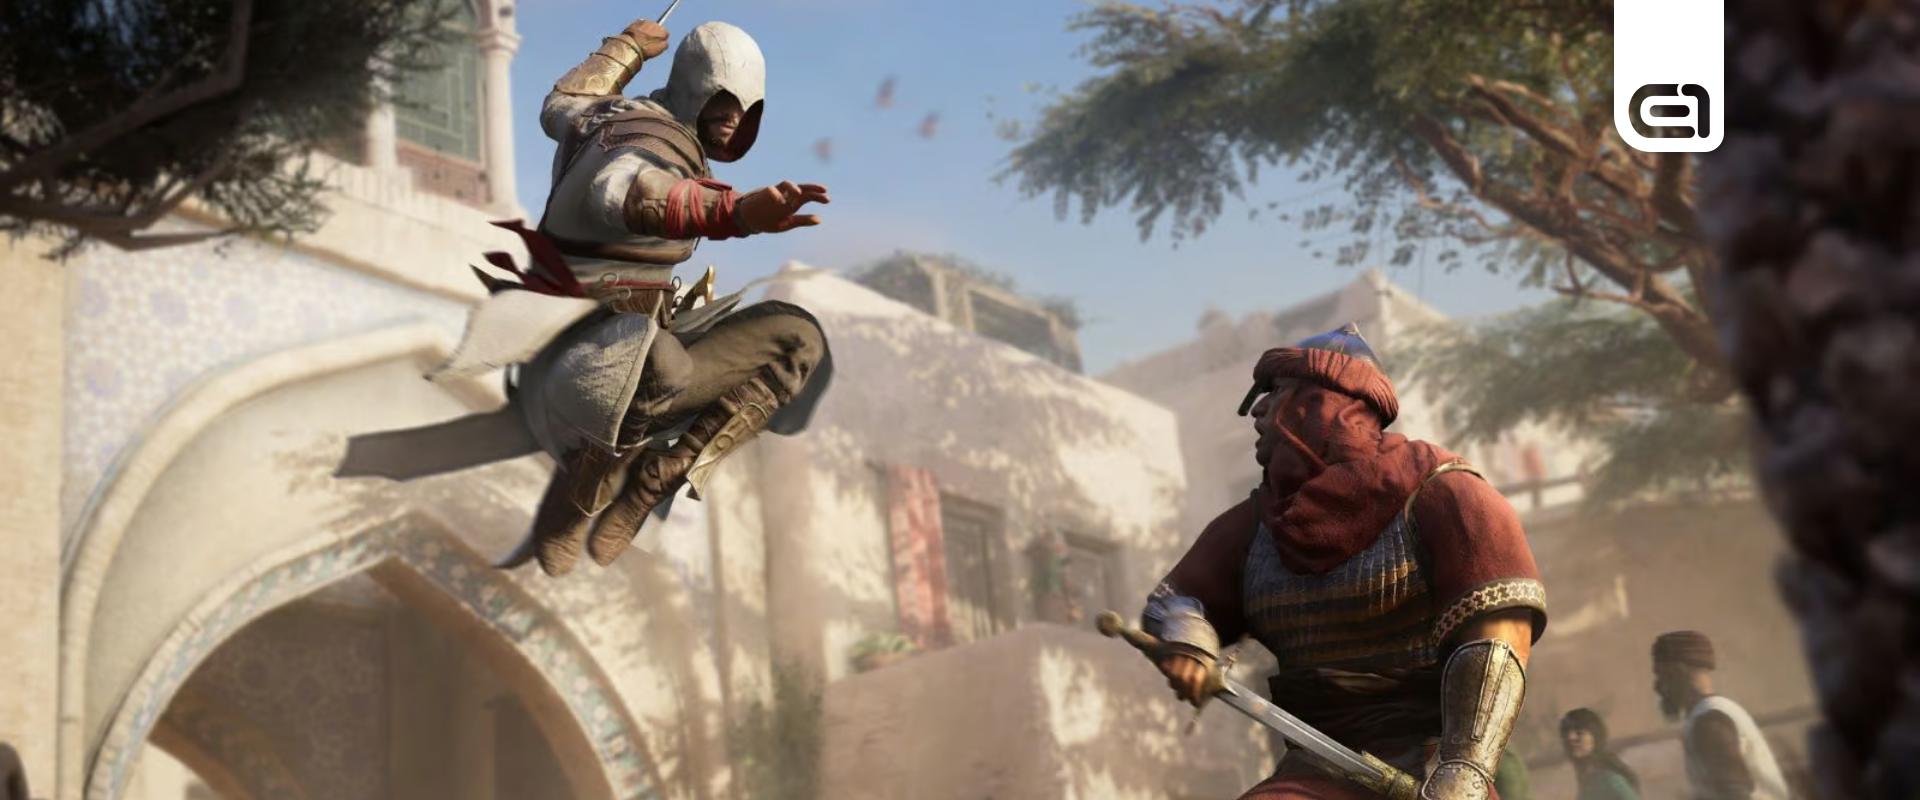 Ütősek az új Assassin's Creed első beszámolói, de a teleportálás még mindig idegesítő